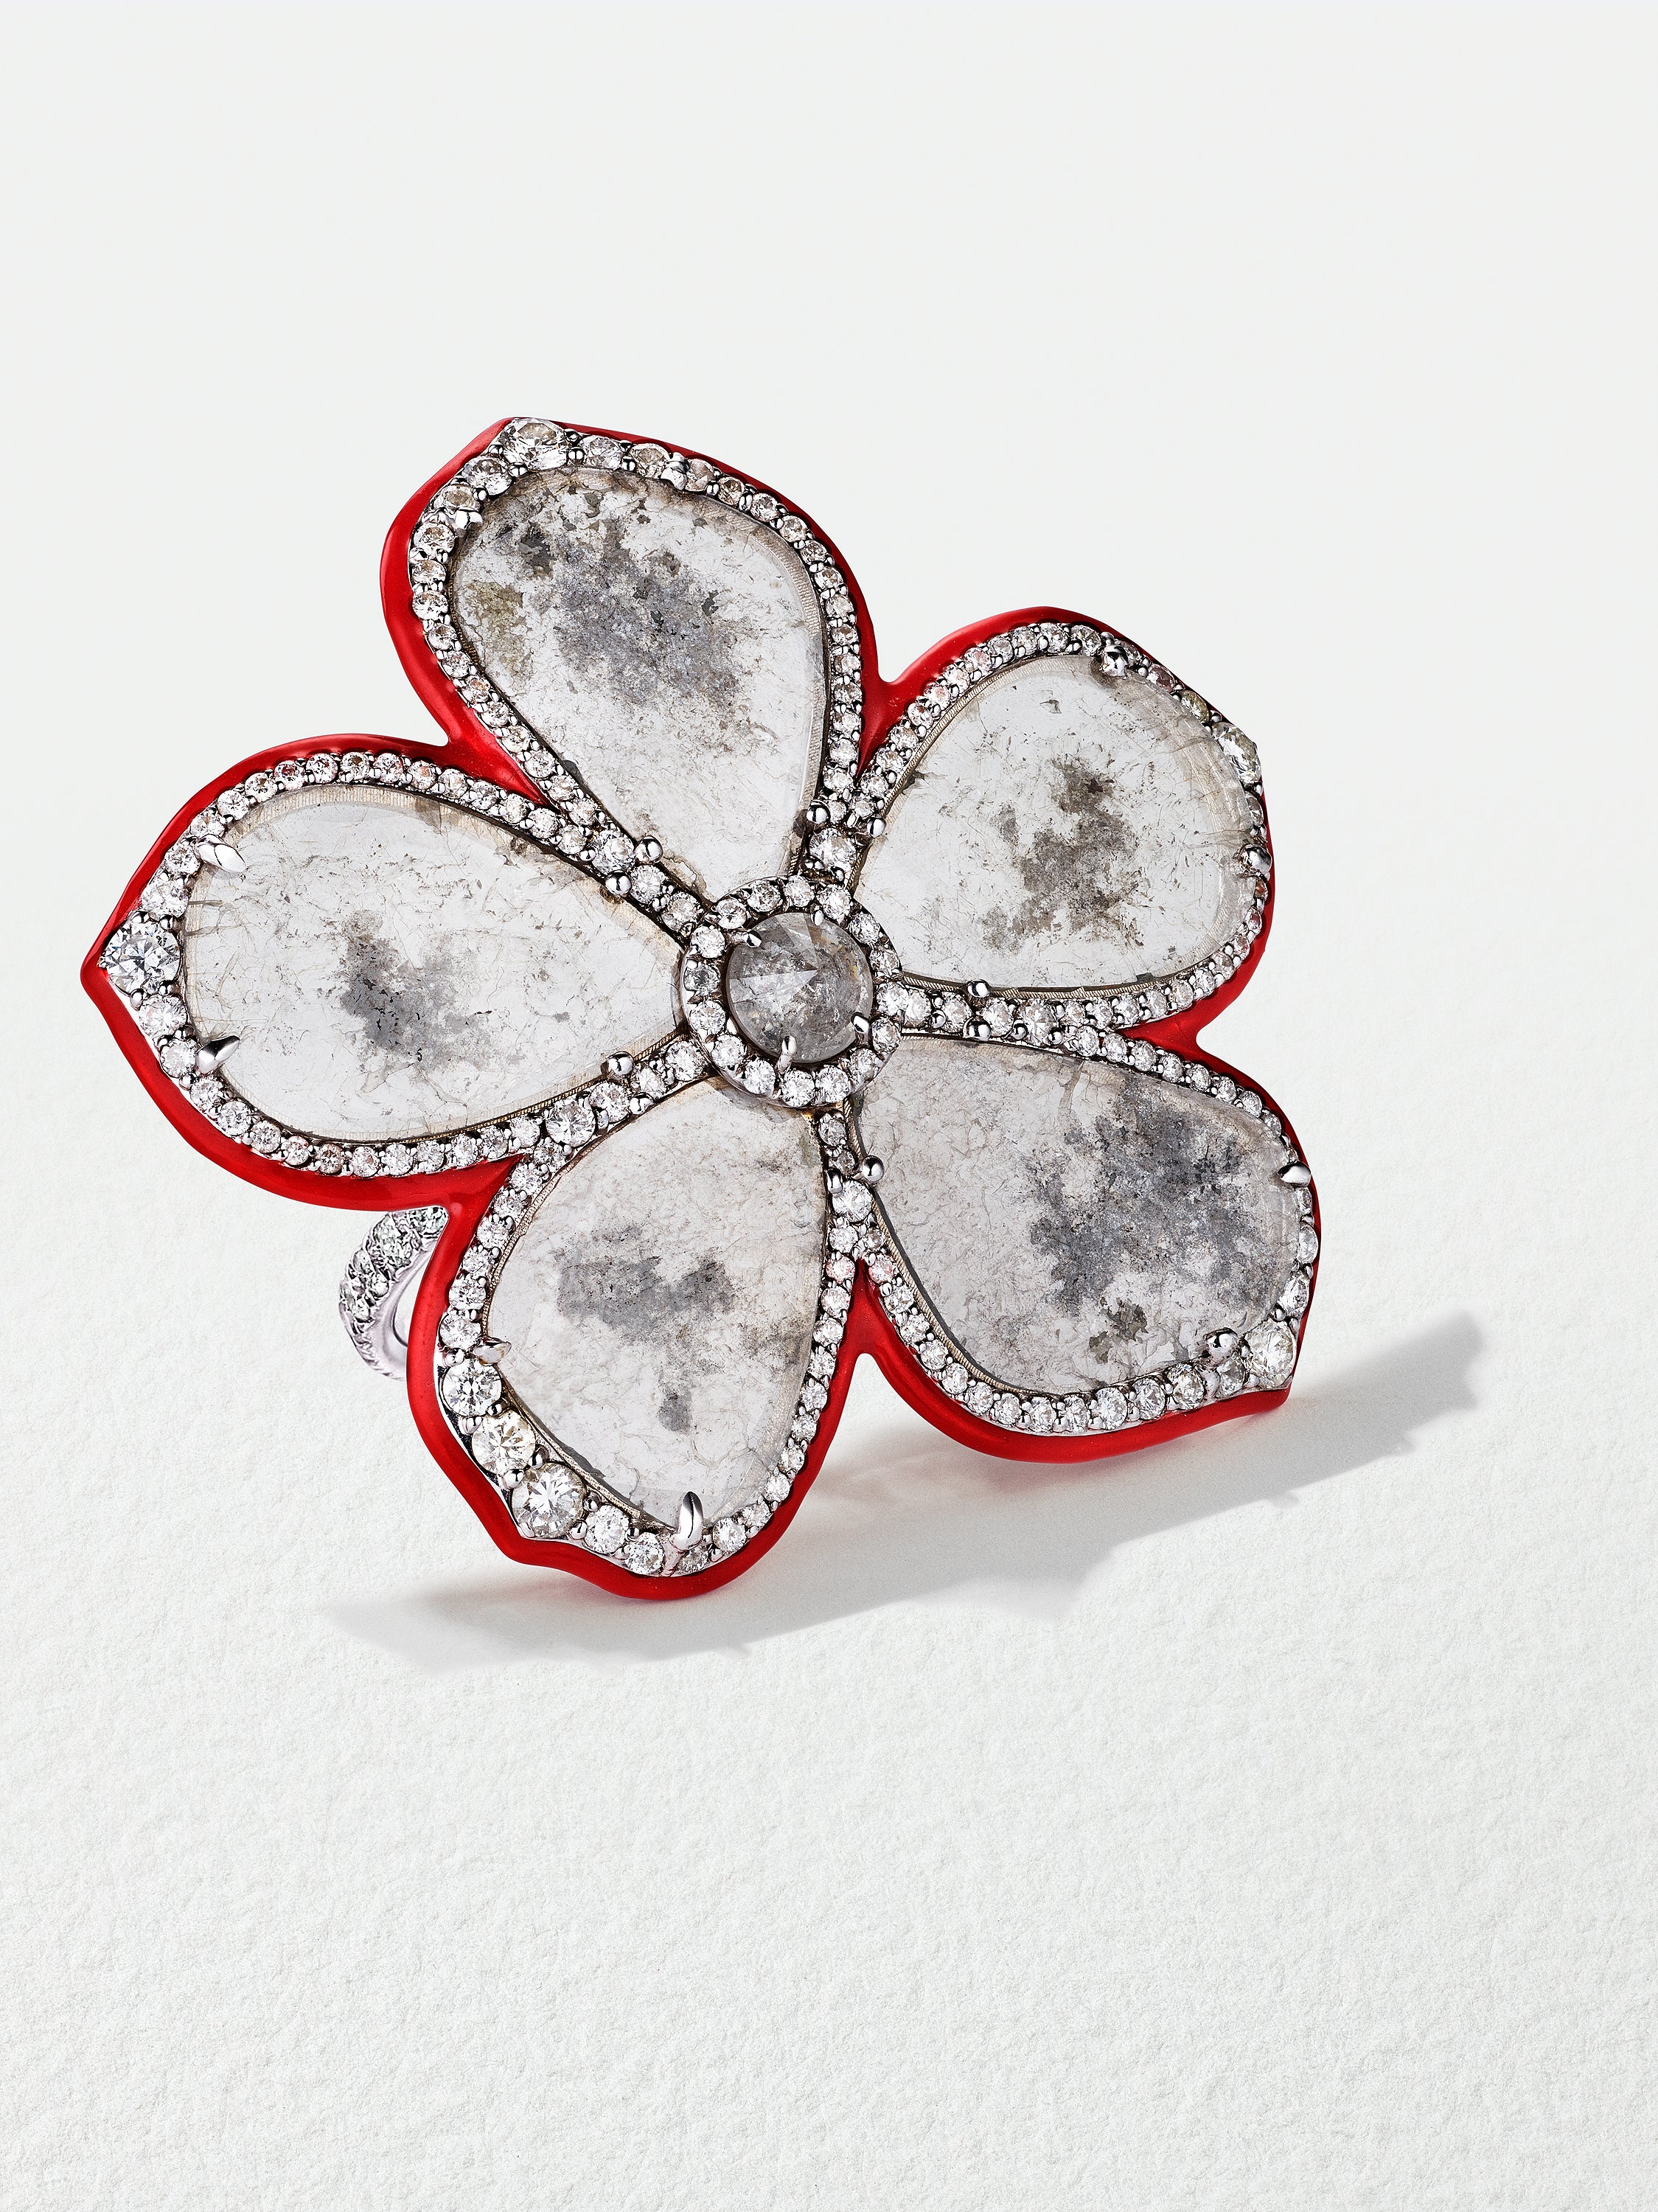 18K White Gold Slice Diamond Flower Ring with Red Enamel